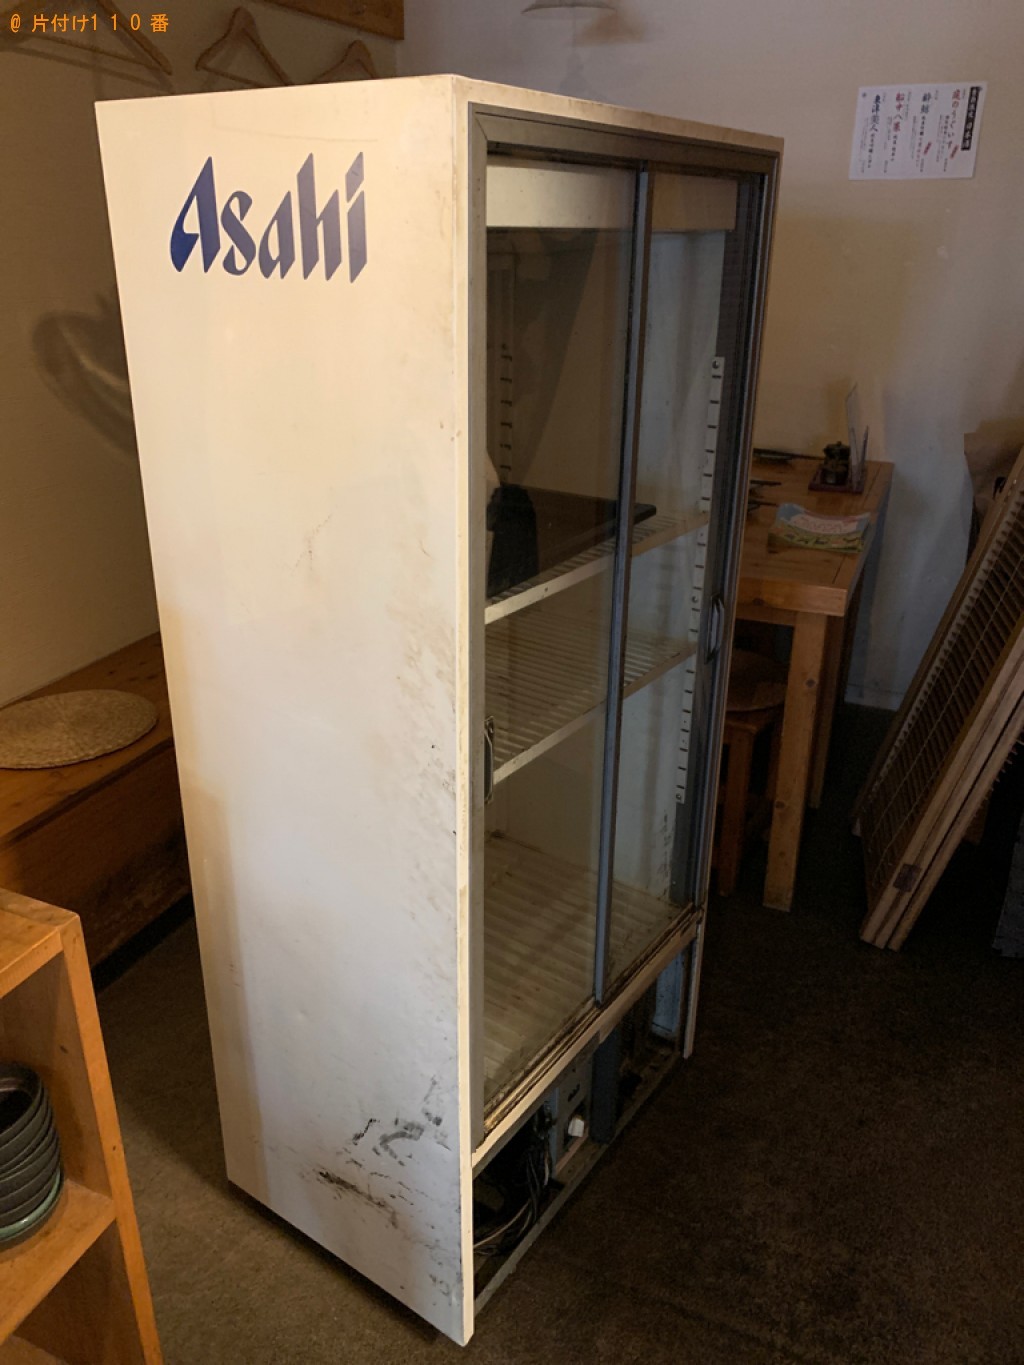 【福岡市中央区】業務用冷蔵庫の出張不用品回収・処分ご依頼